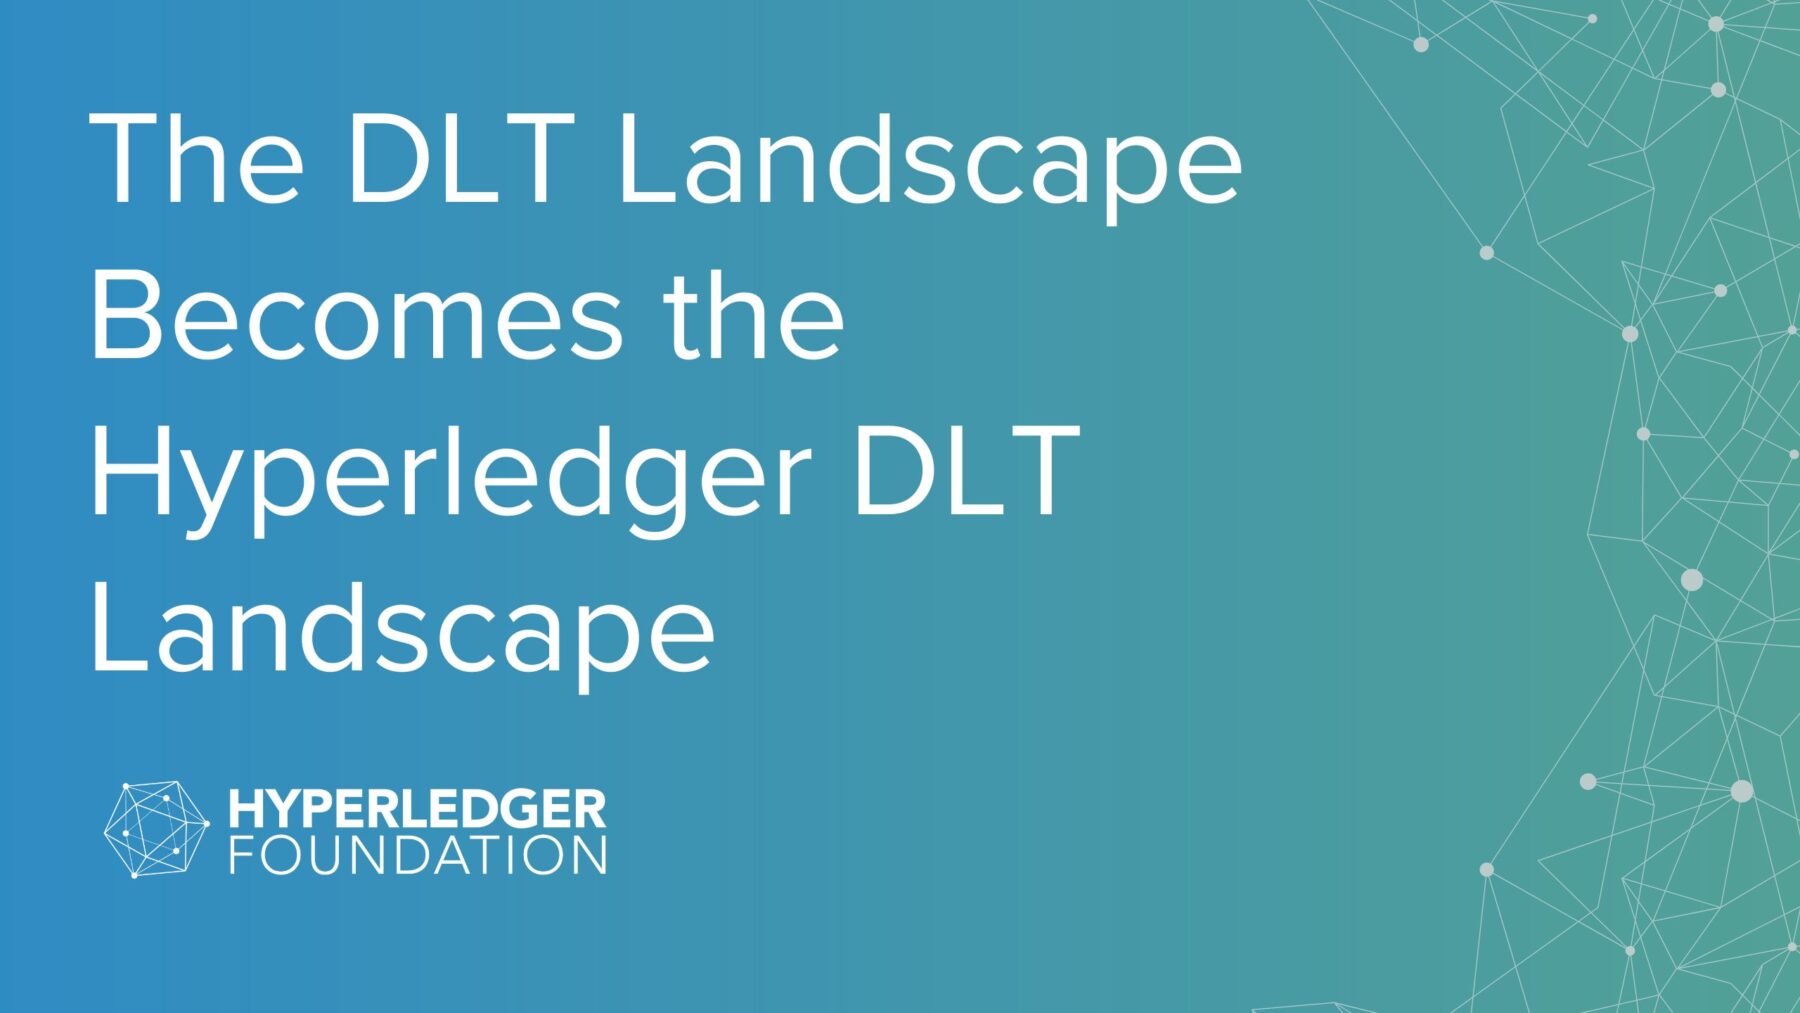 The DLT Landscape Becomes the Hyperledger DLT Landscape